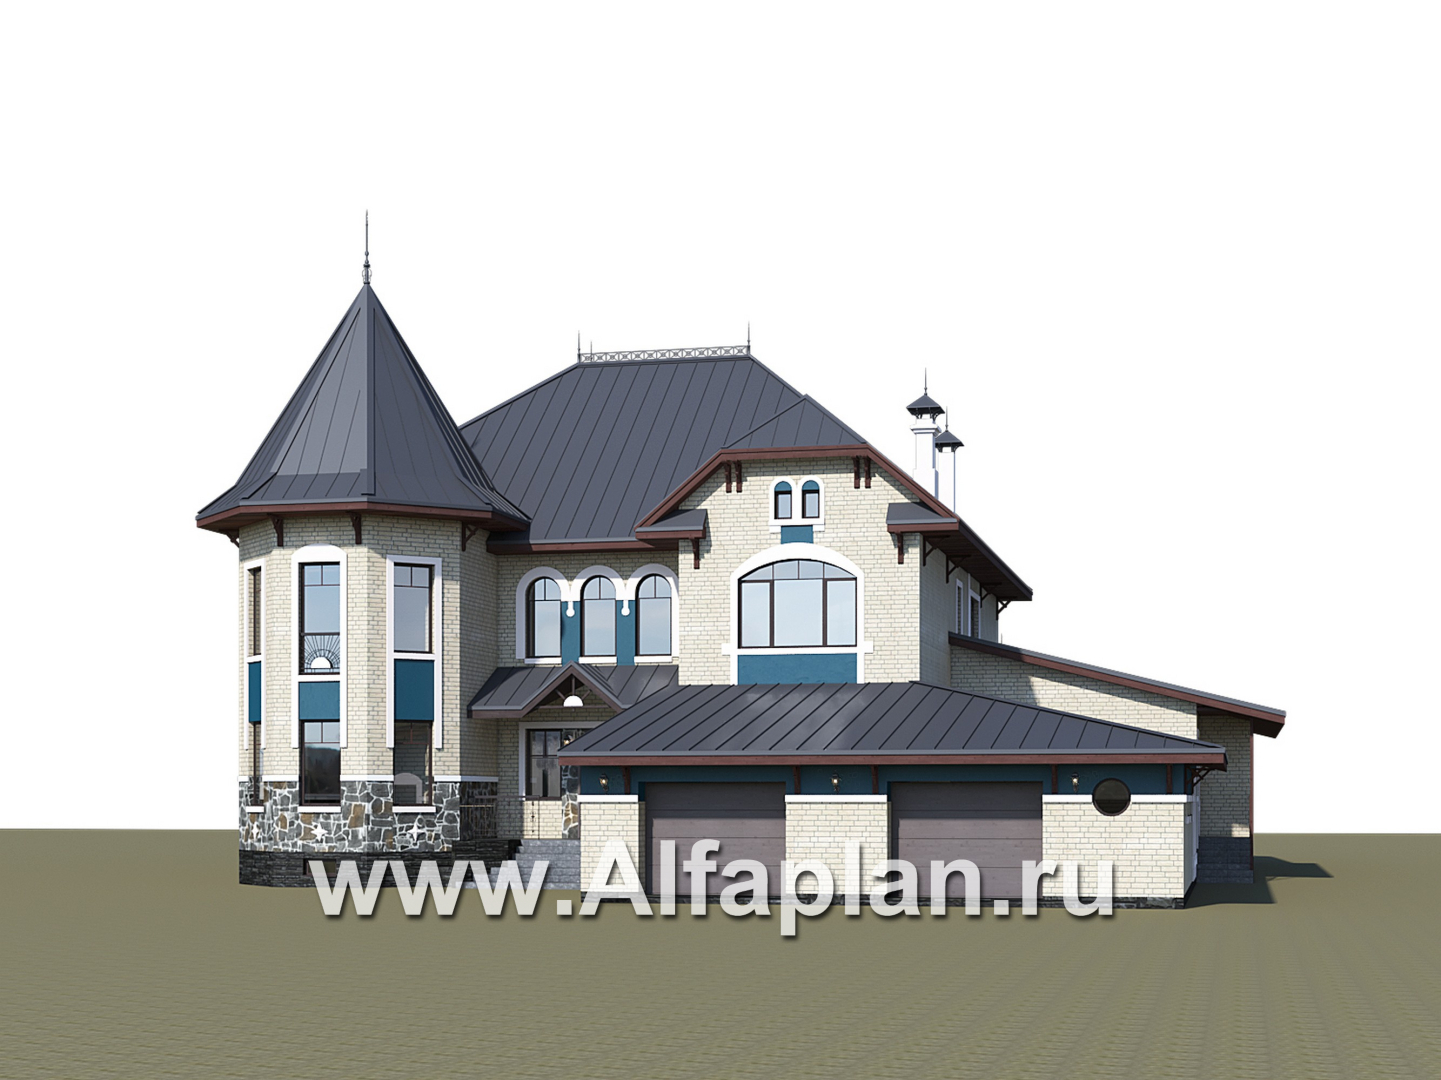 Проекты домов Альфаплан - "Дворянское гнездо" - семейный особняк в русском стиле - дополнительное изображение №2